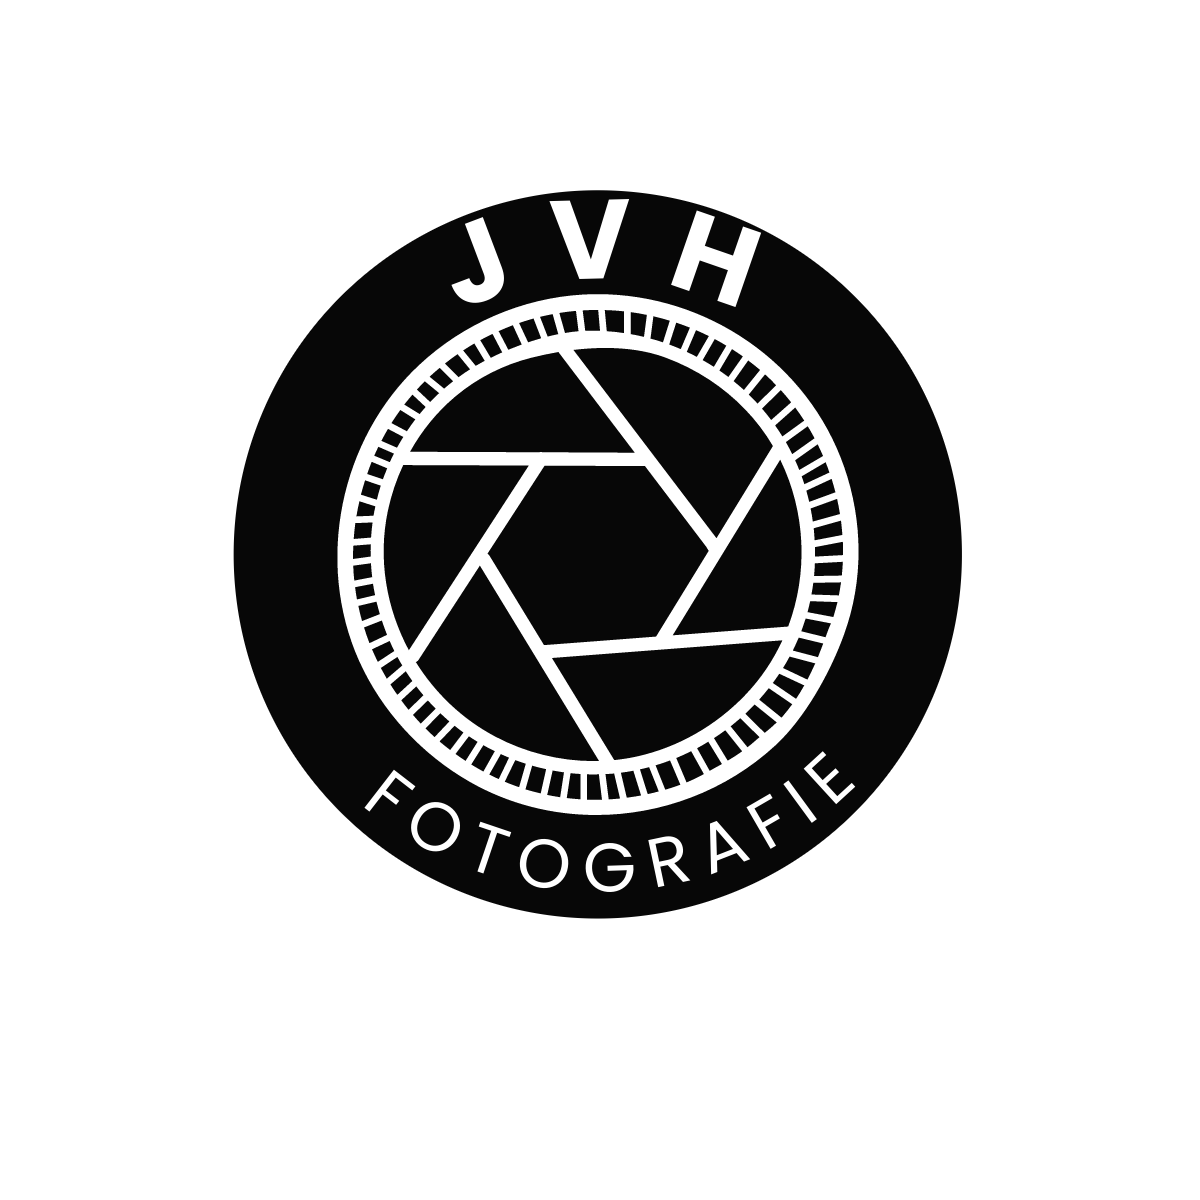 JVH Fotografie